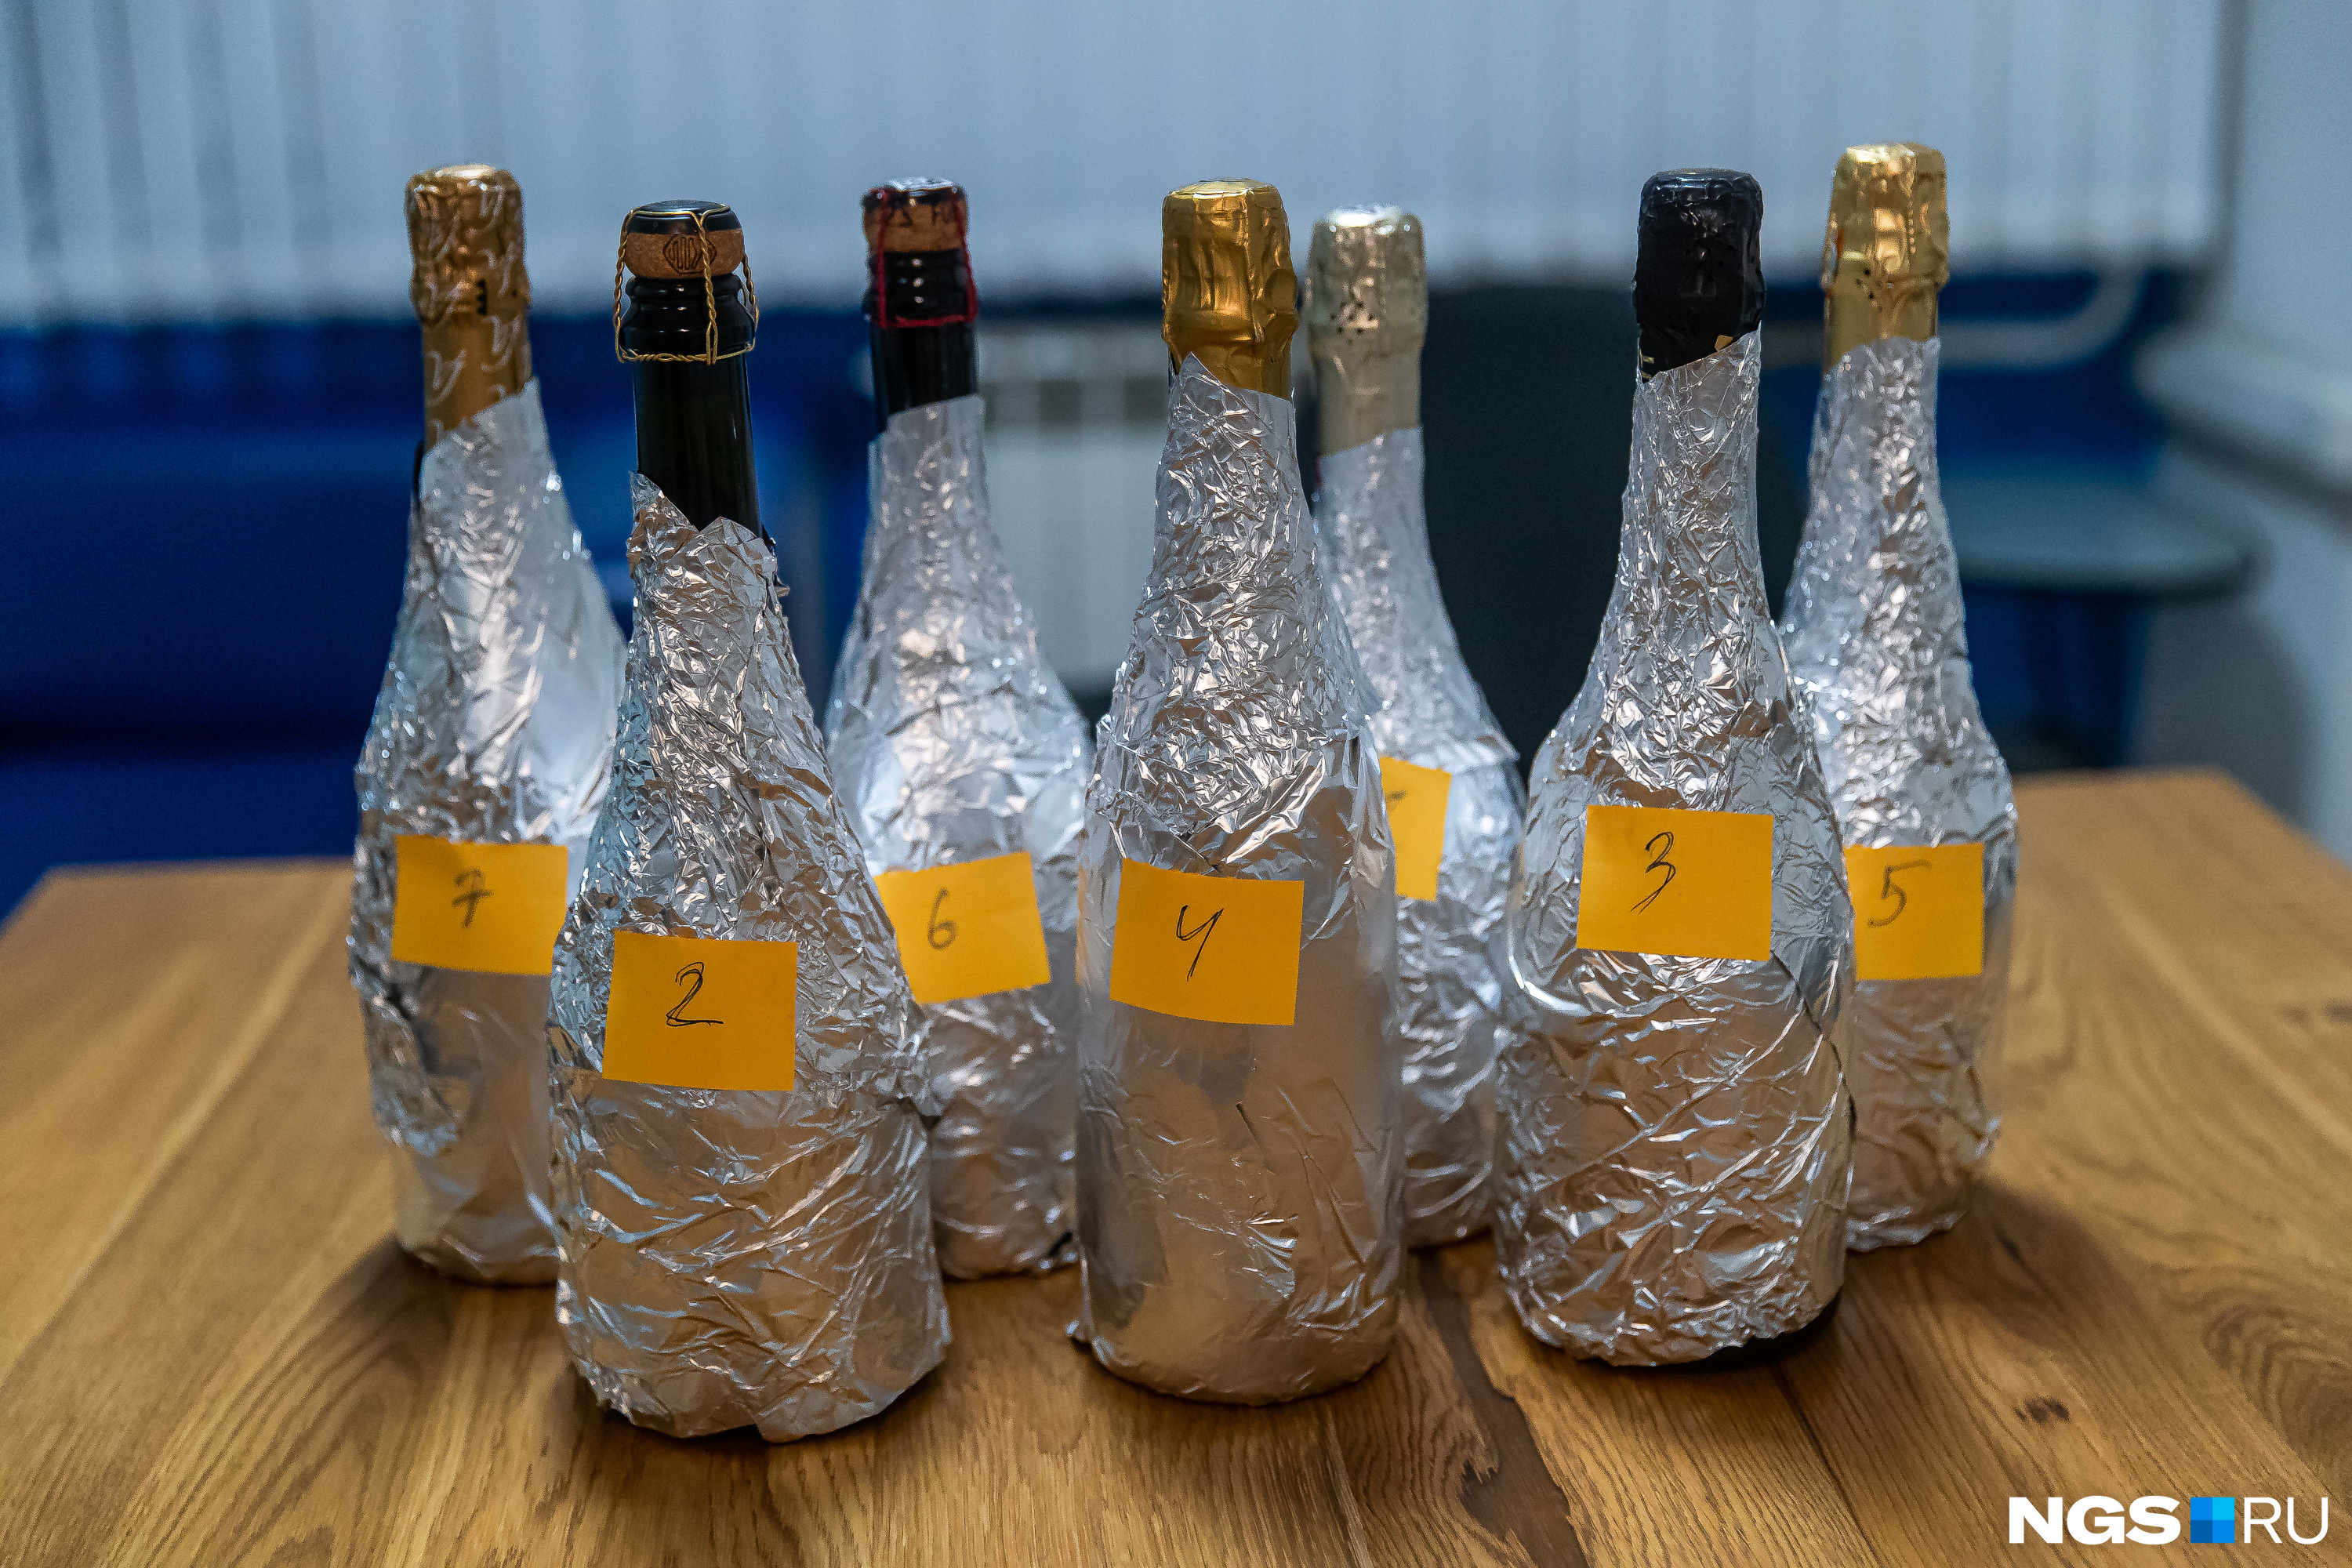 Как украсить своими руками бутылку шампанского на Новый год?